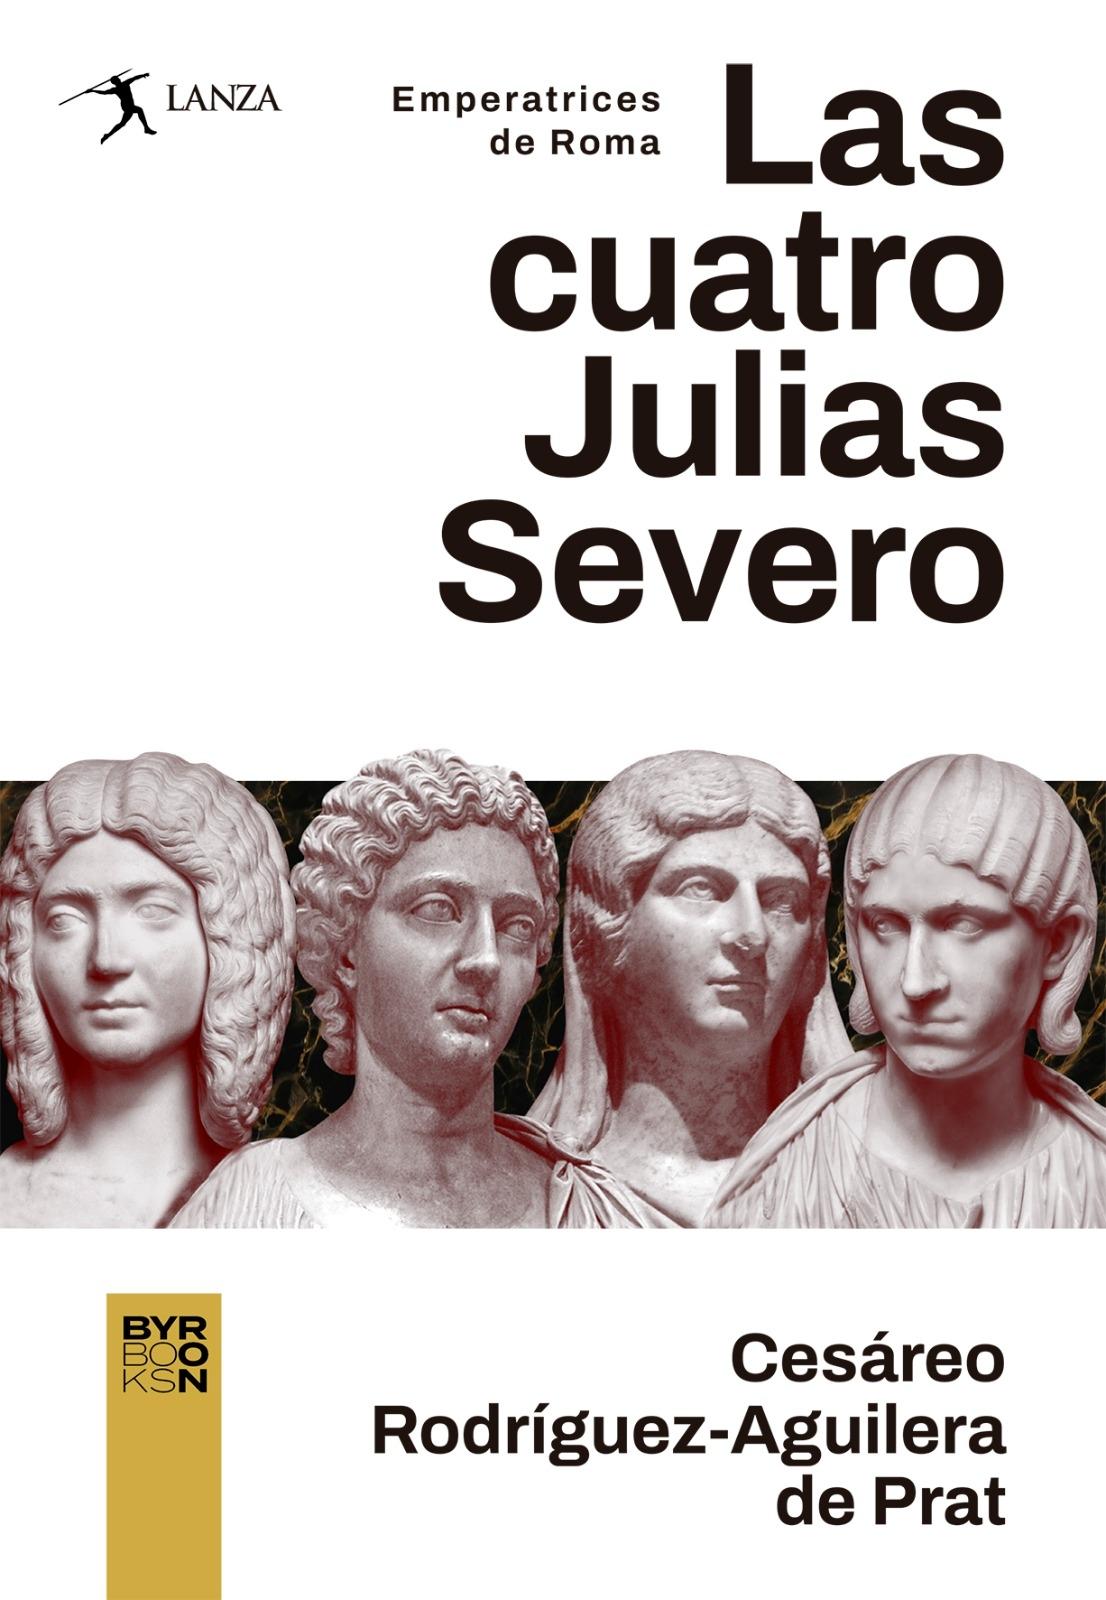 Las Cuatro Julias Severo "Emperatrices de Roma". 